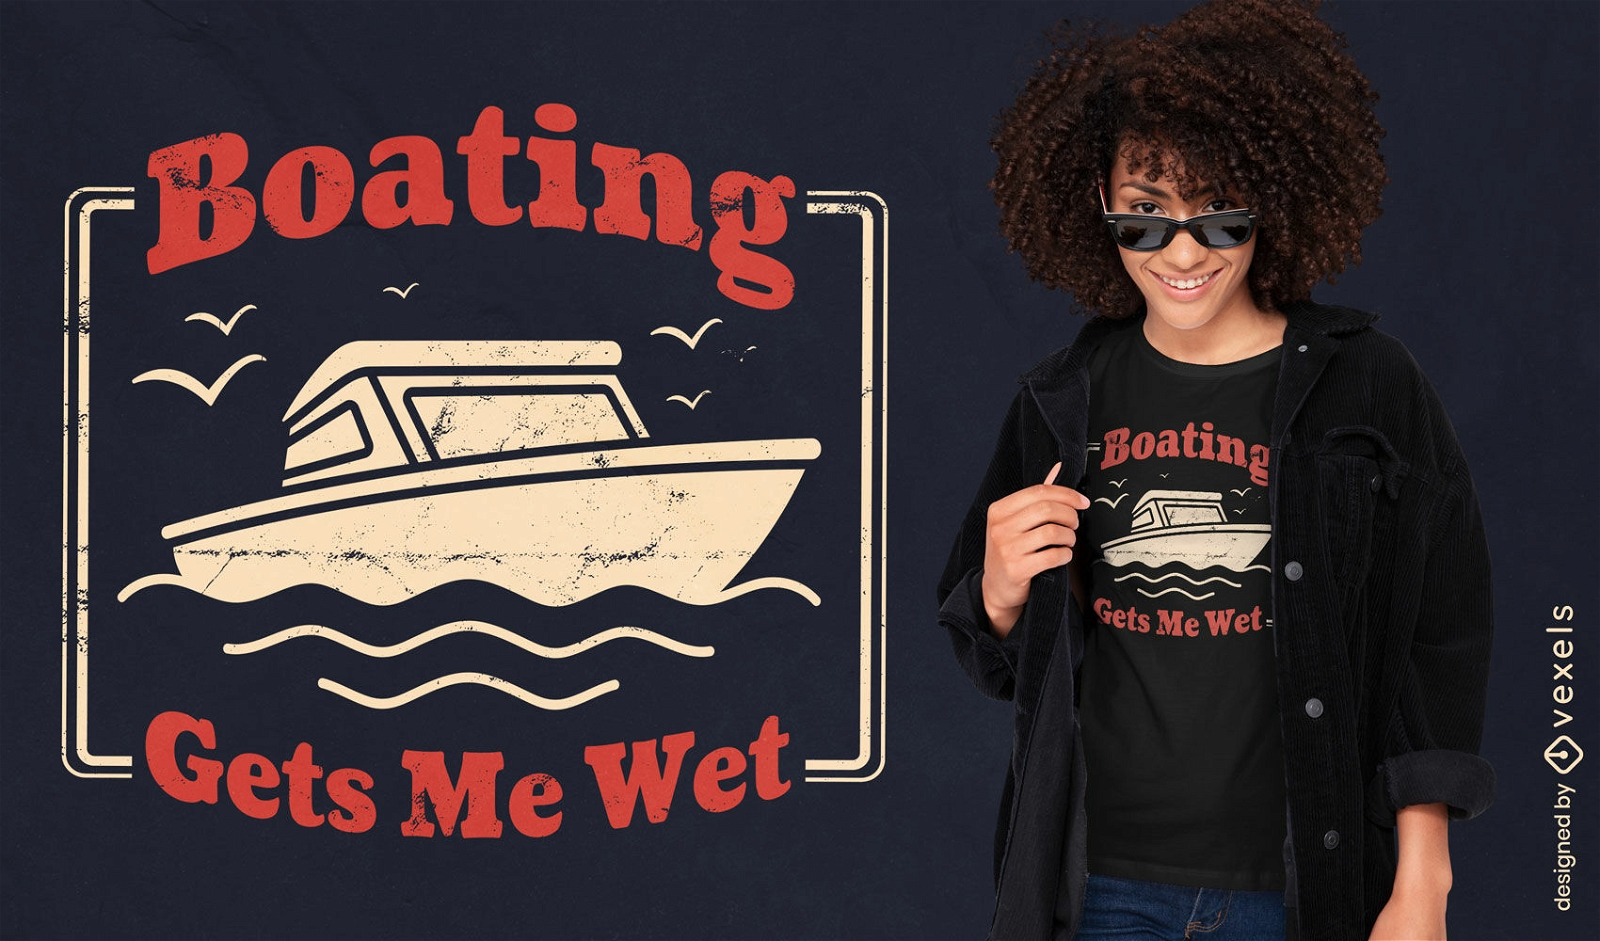 Dise?o de camiseta de hobby de barco en el agua.